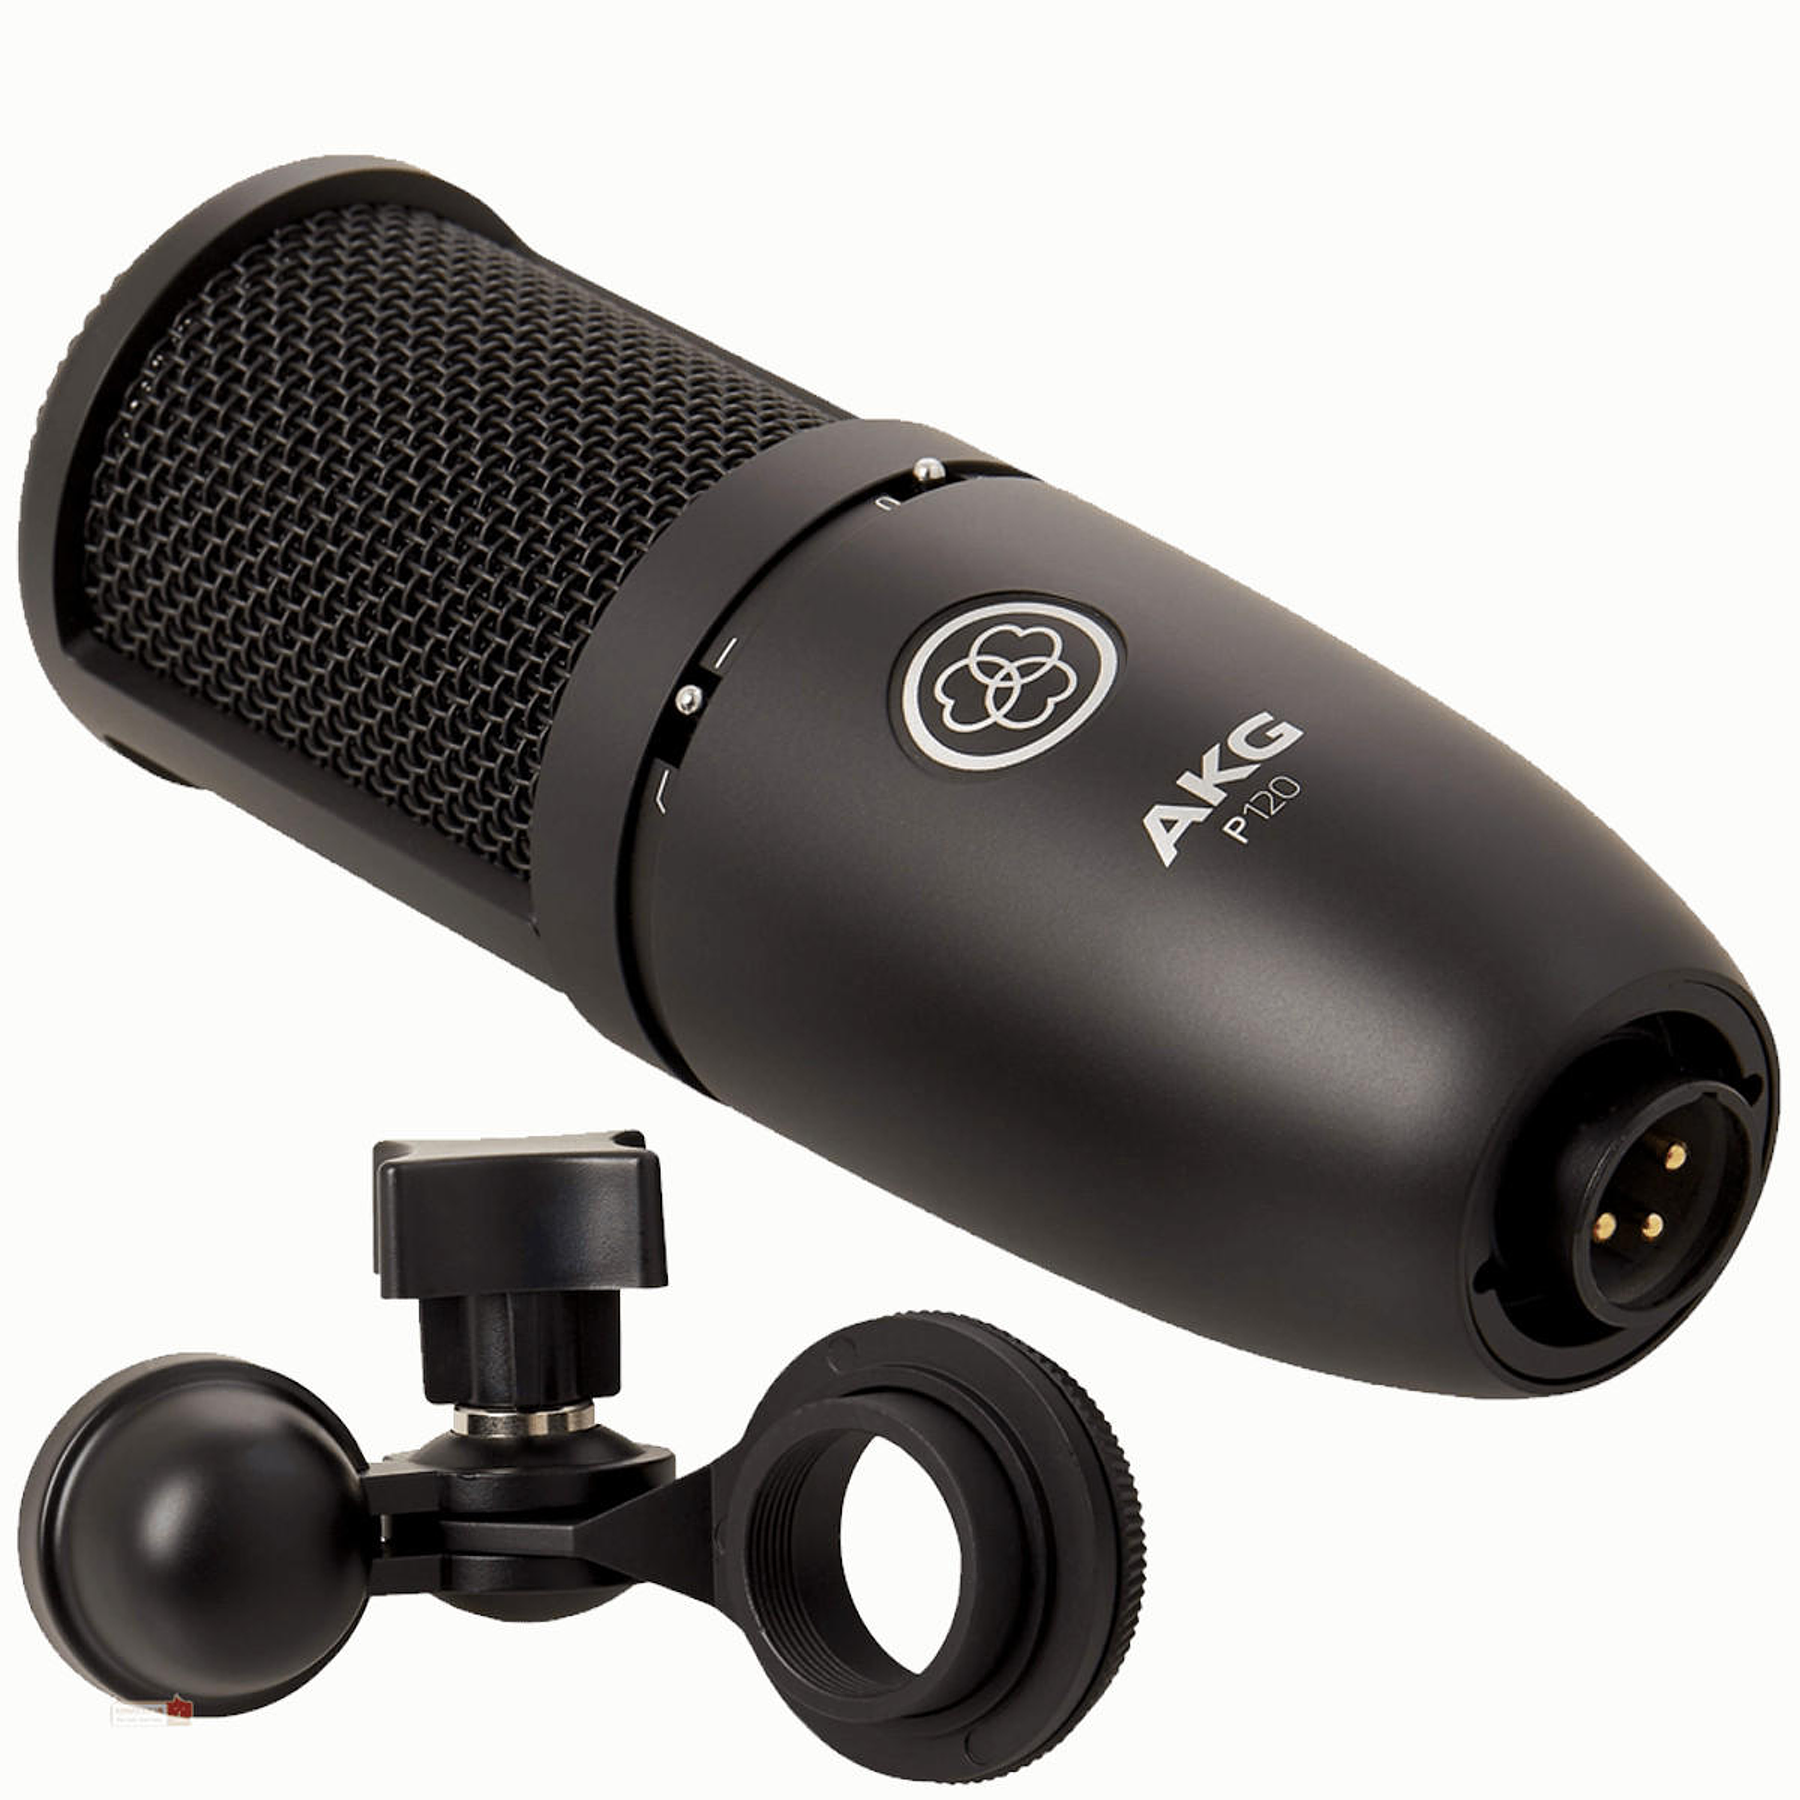 Microfono Condensador AKG P120